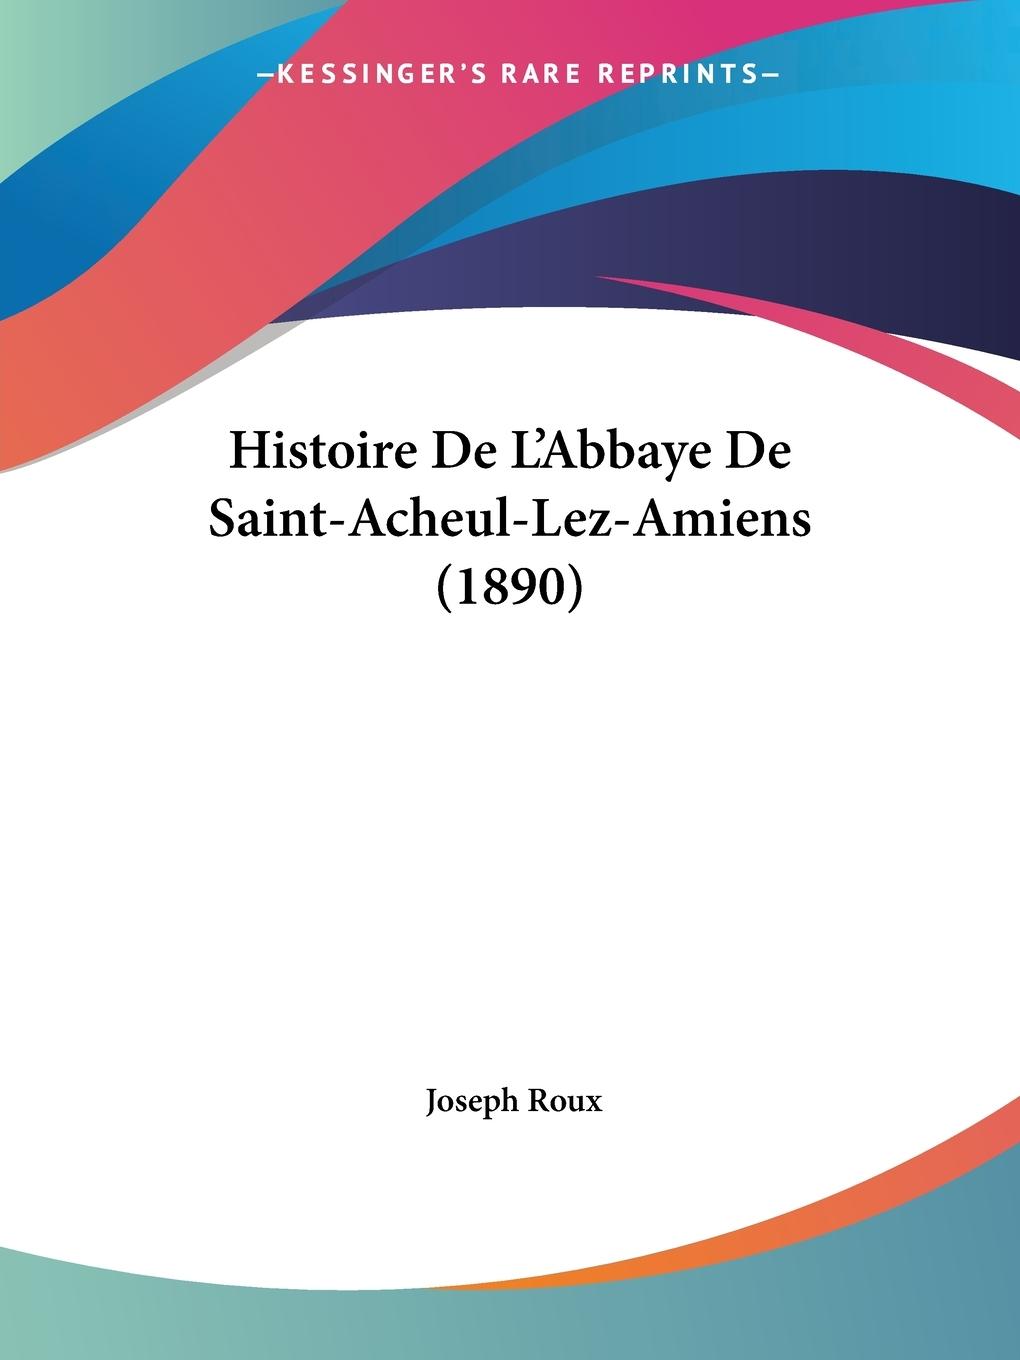 Histoire De L Abbaye De Saint-Acheul-Lez-Amiens (1890) - Roux, Joseph